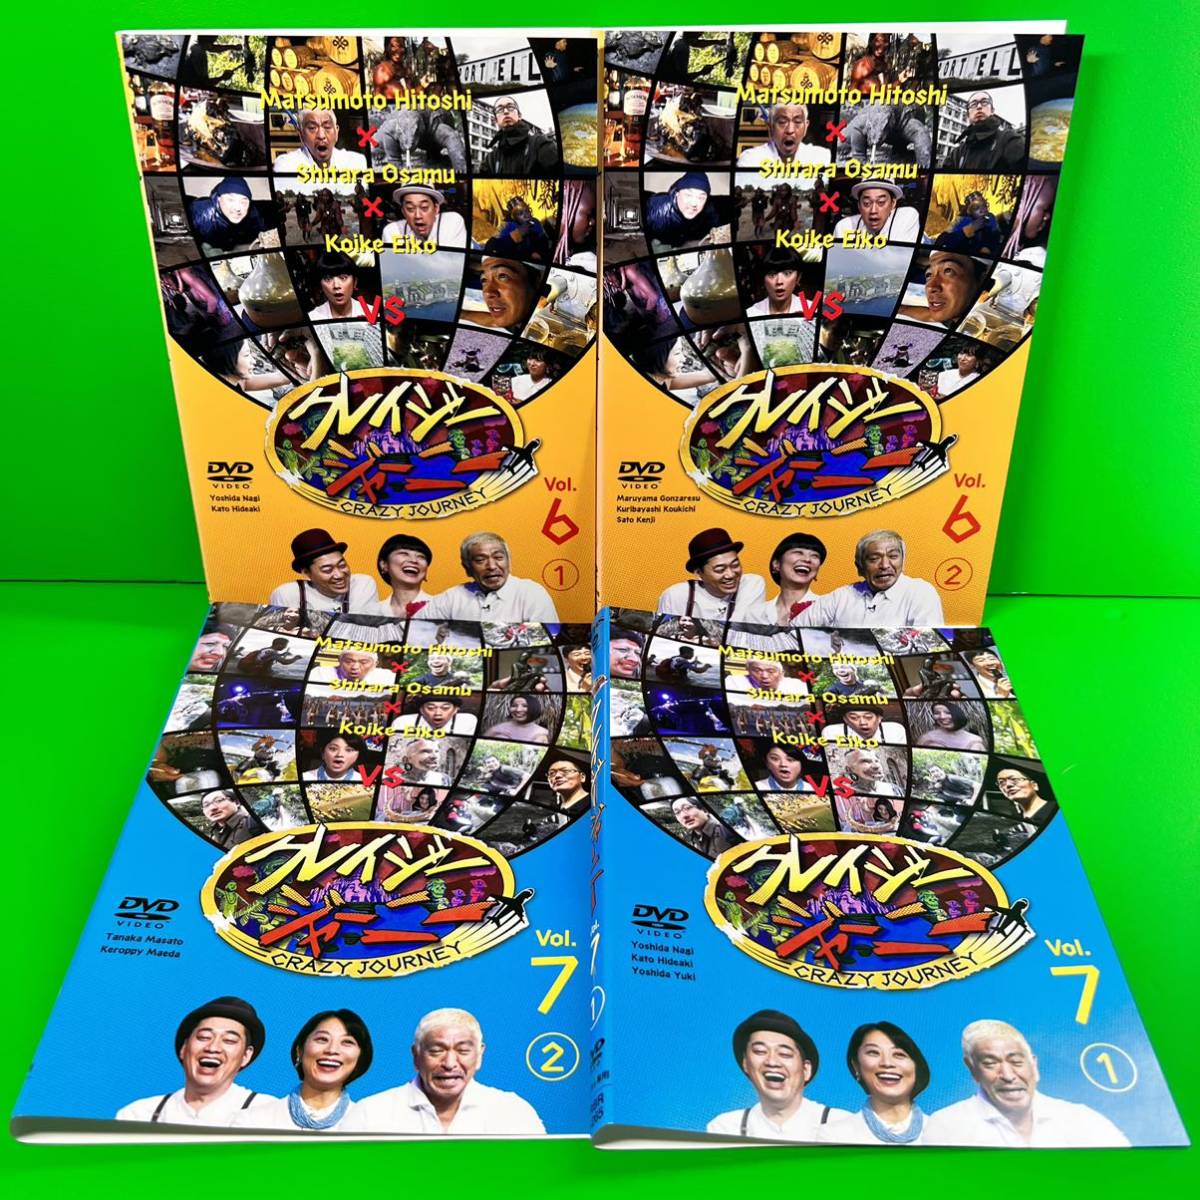 クレイジージャーニー DVD Vol.6&7 全4巻セット 松本人志 /設楽統